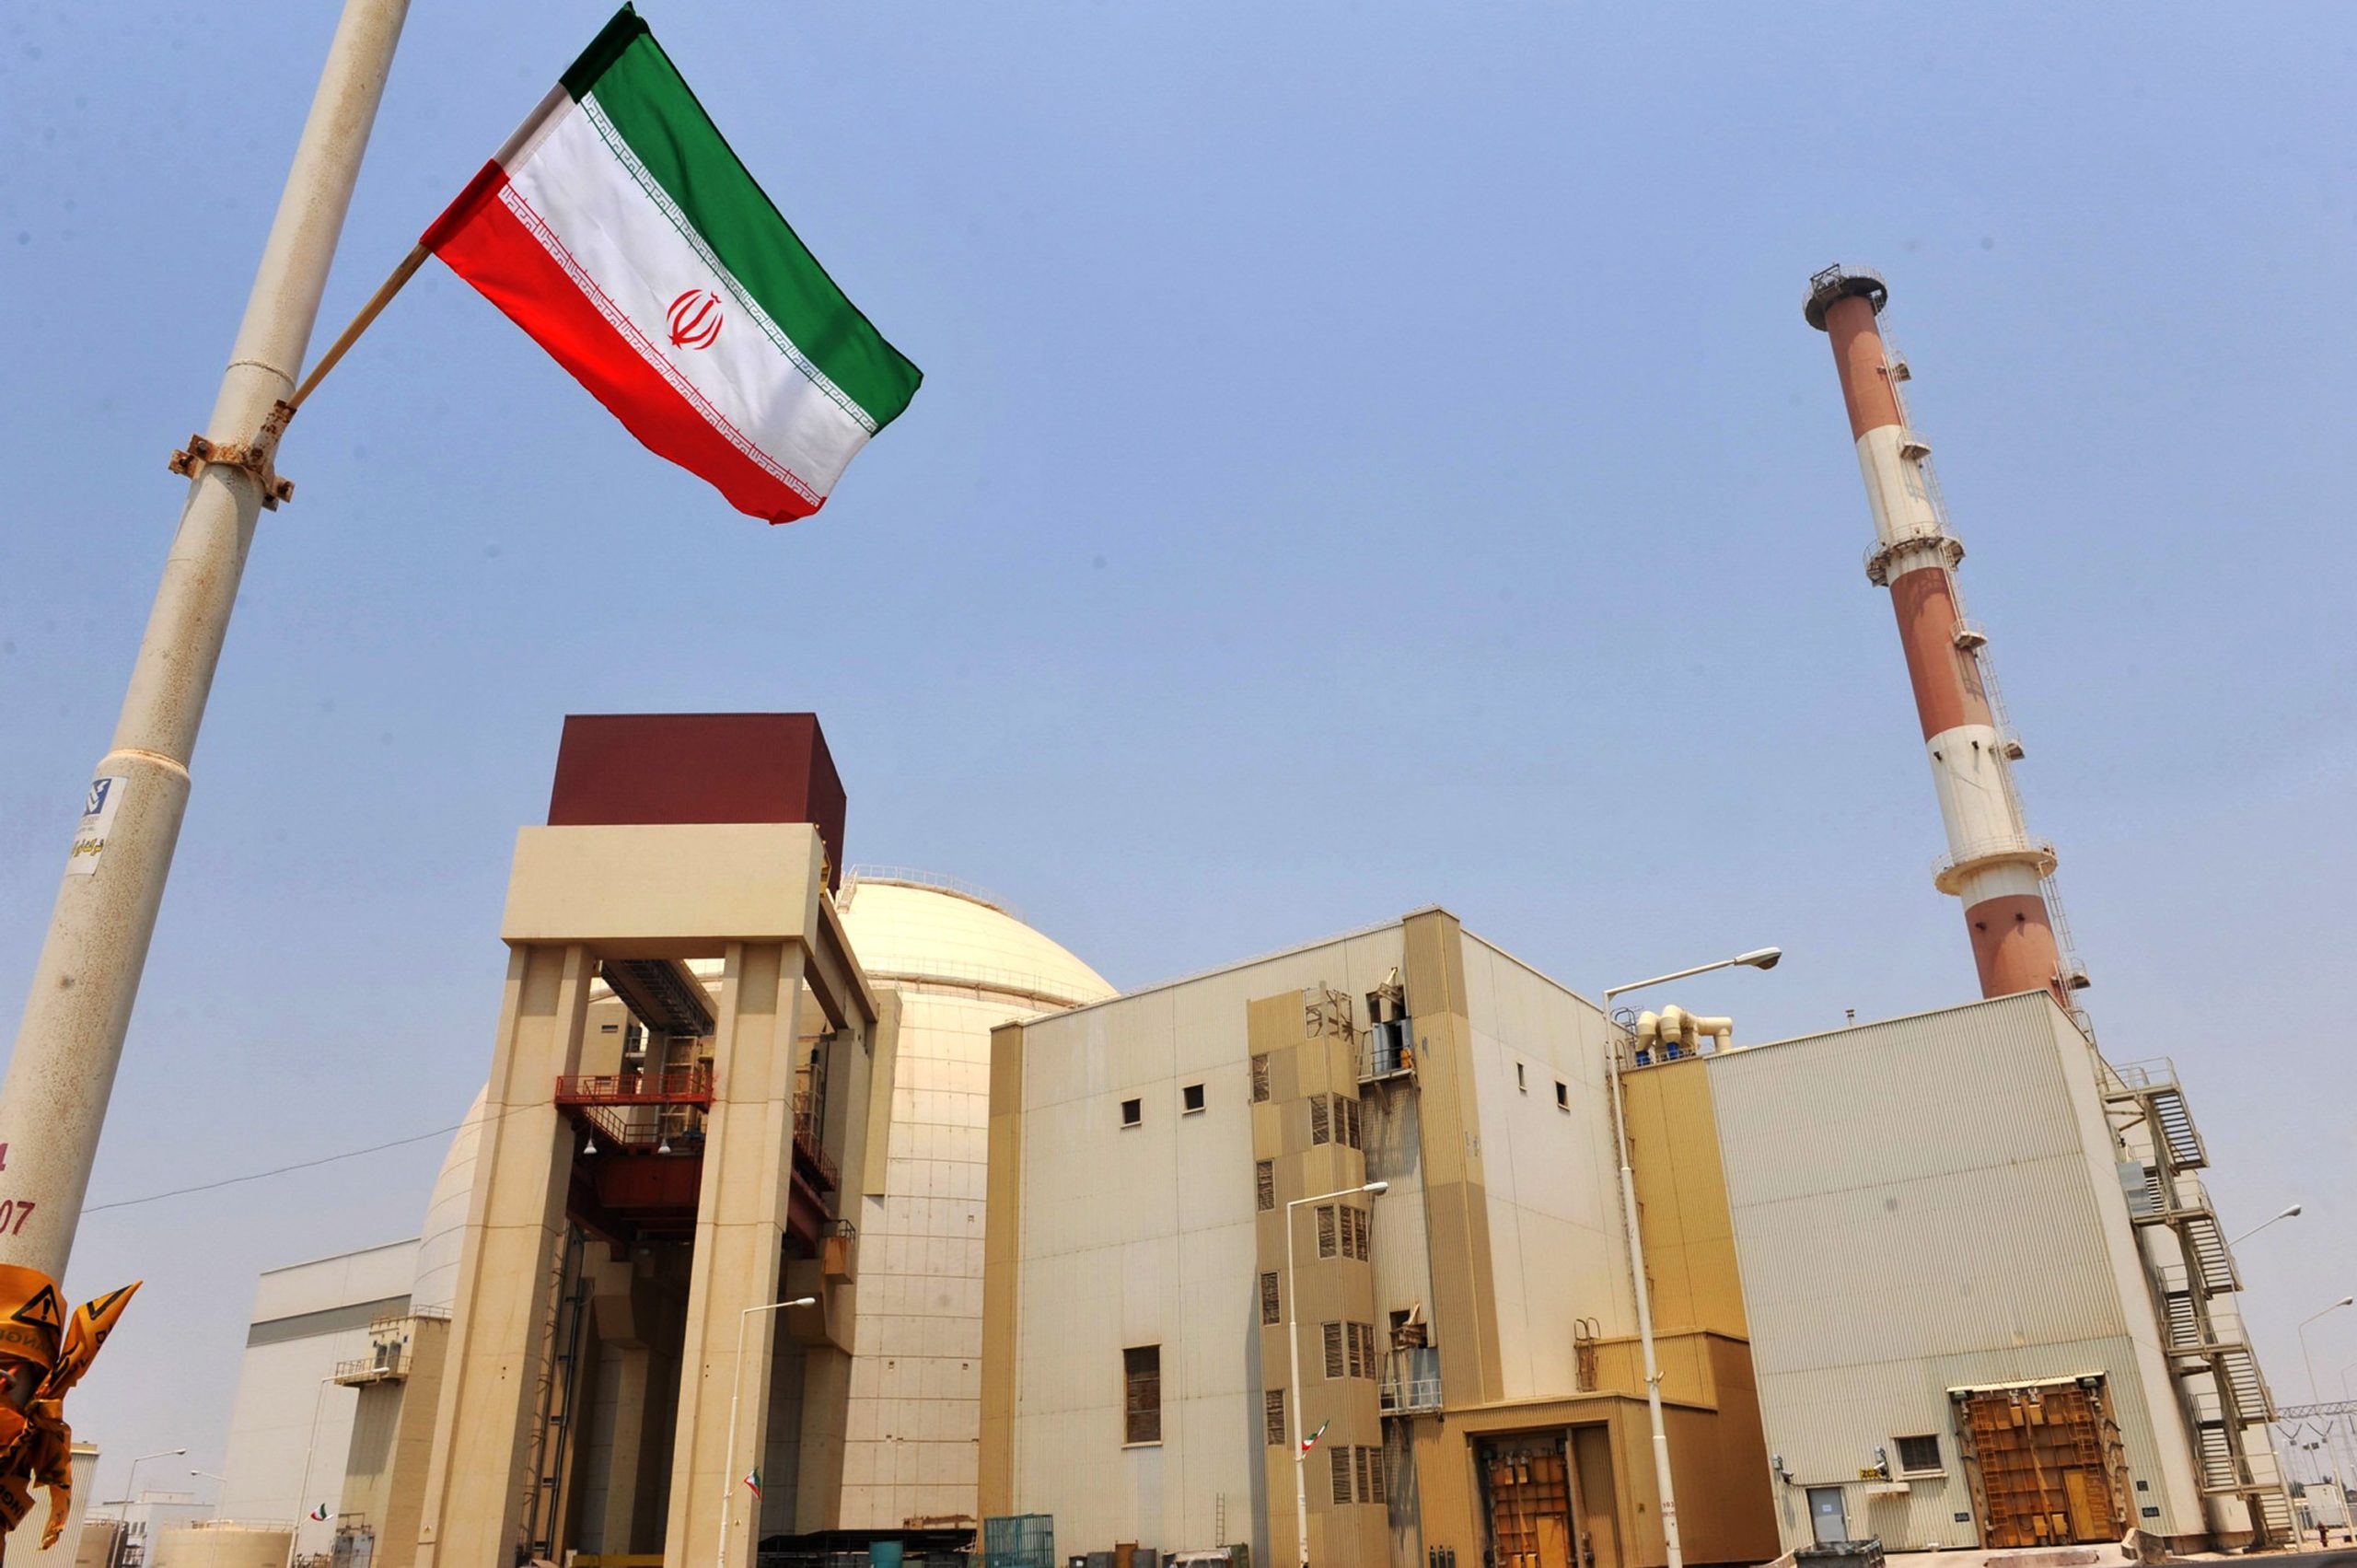 Η Τεχεράνη δηλώνει ότι έλαβε απάντηση από τις ΗΠΑ επί του σχεδίου συμφωνίας για το ιρανικό πυρηνικό πρόγραμμα 